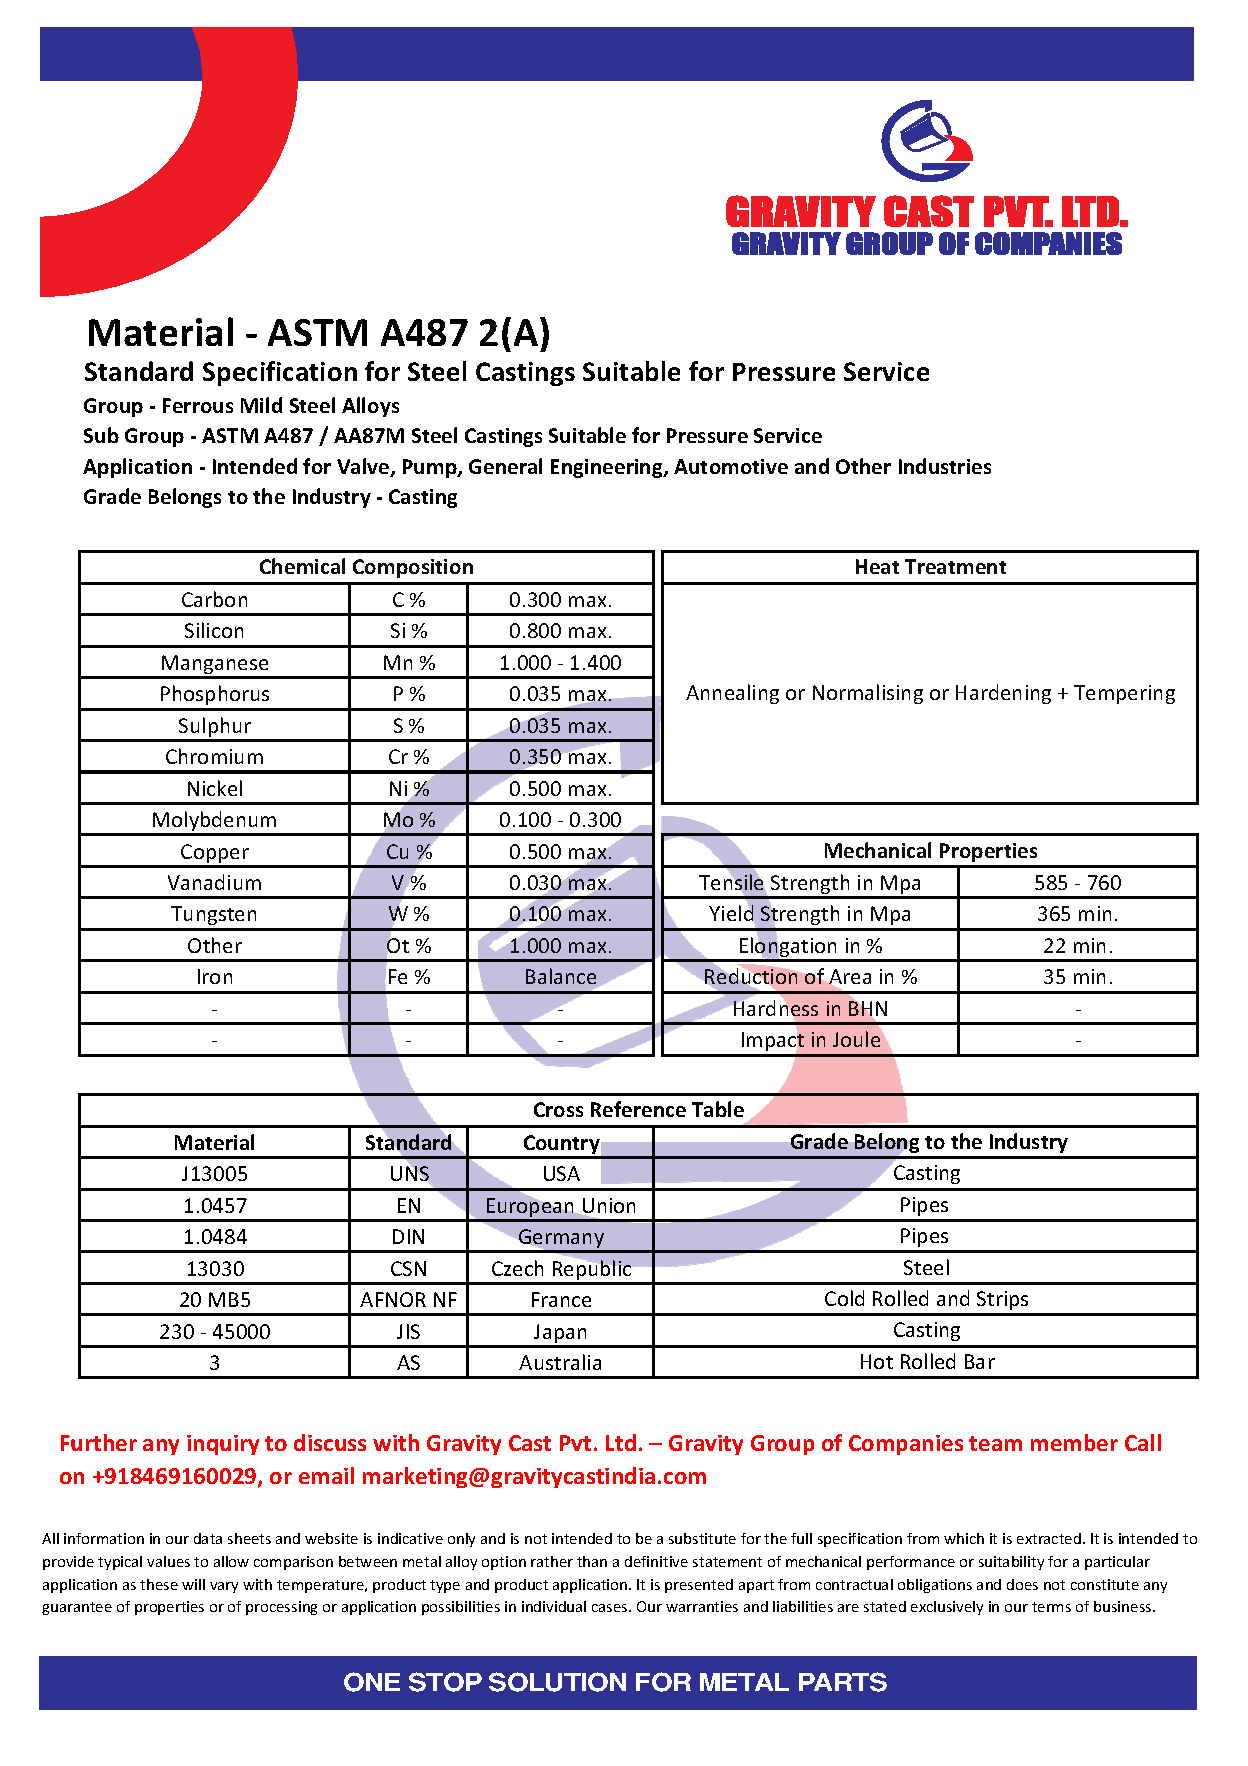 ASTM A487 2(A).pdf